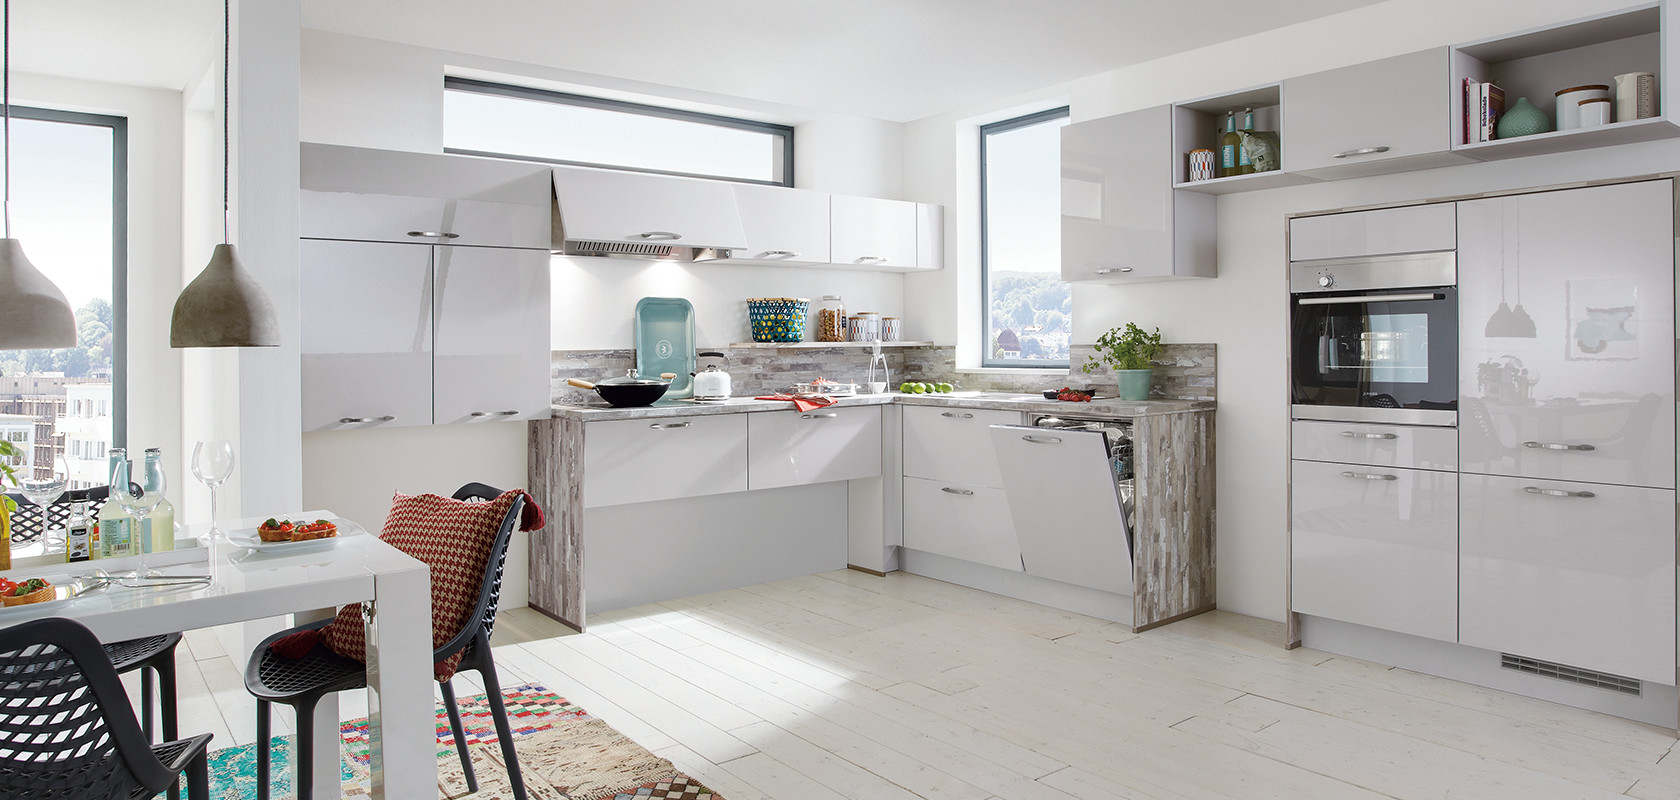 Cocina moderna y luminosa con gabinetes blancos, electrodomésticos de acero inoxidable y toques de color en objetos decorativos y una alfombra de varios colores.